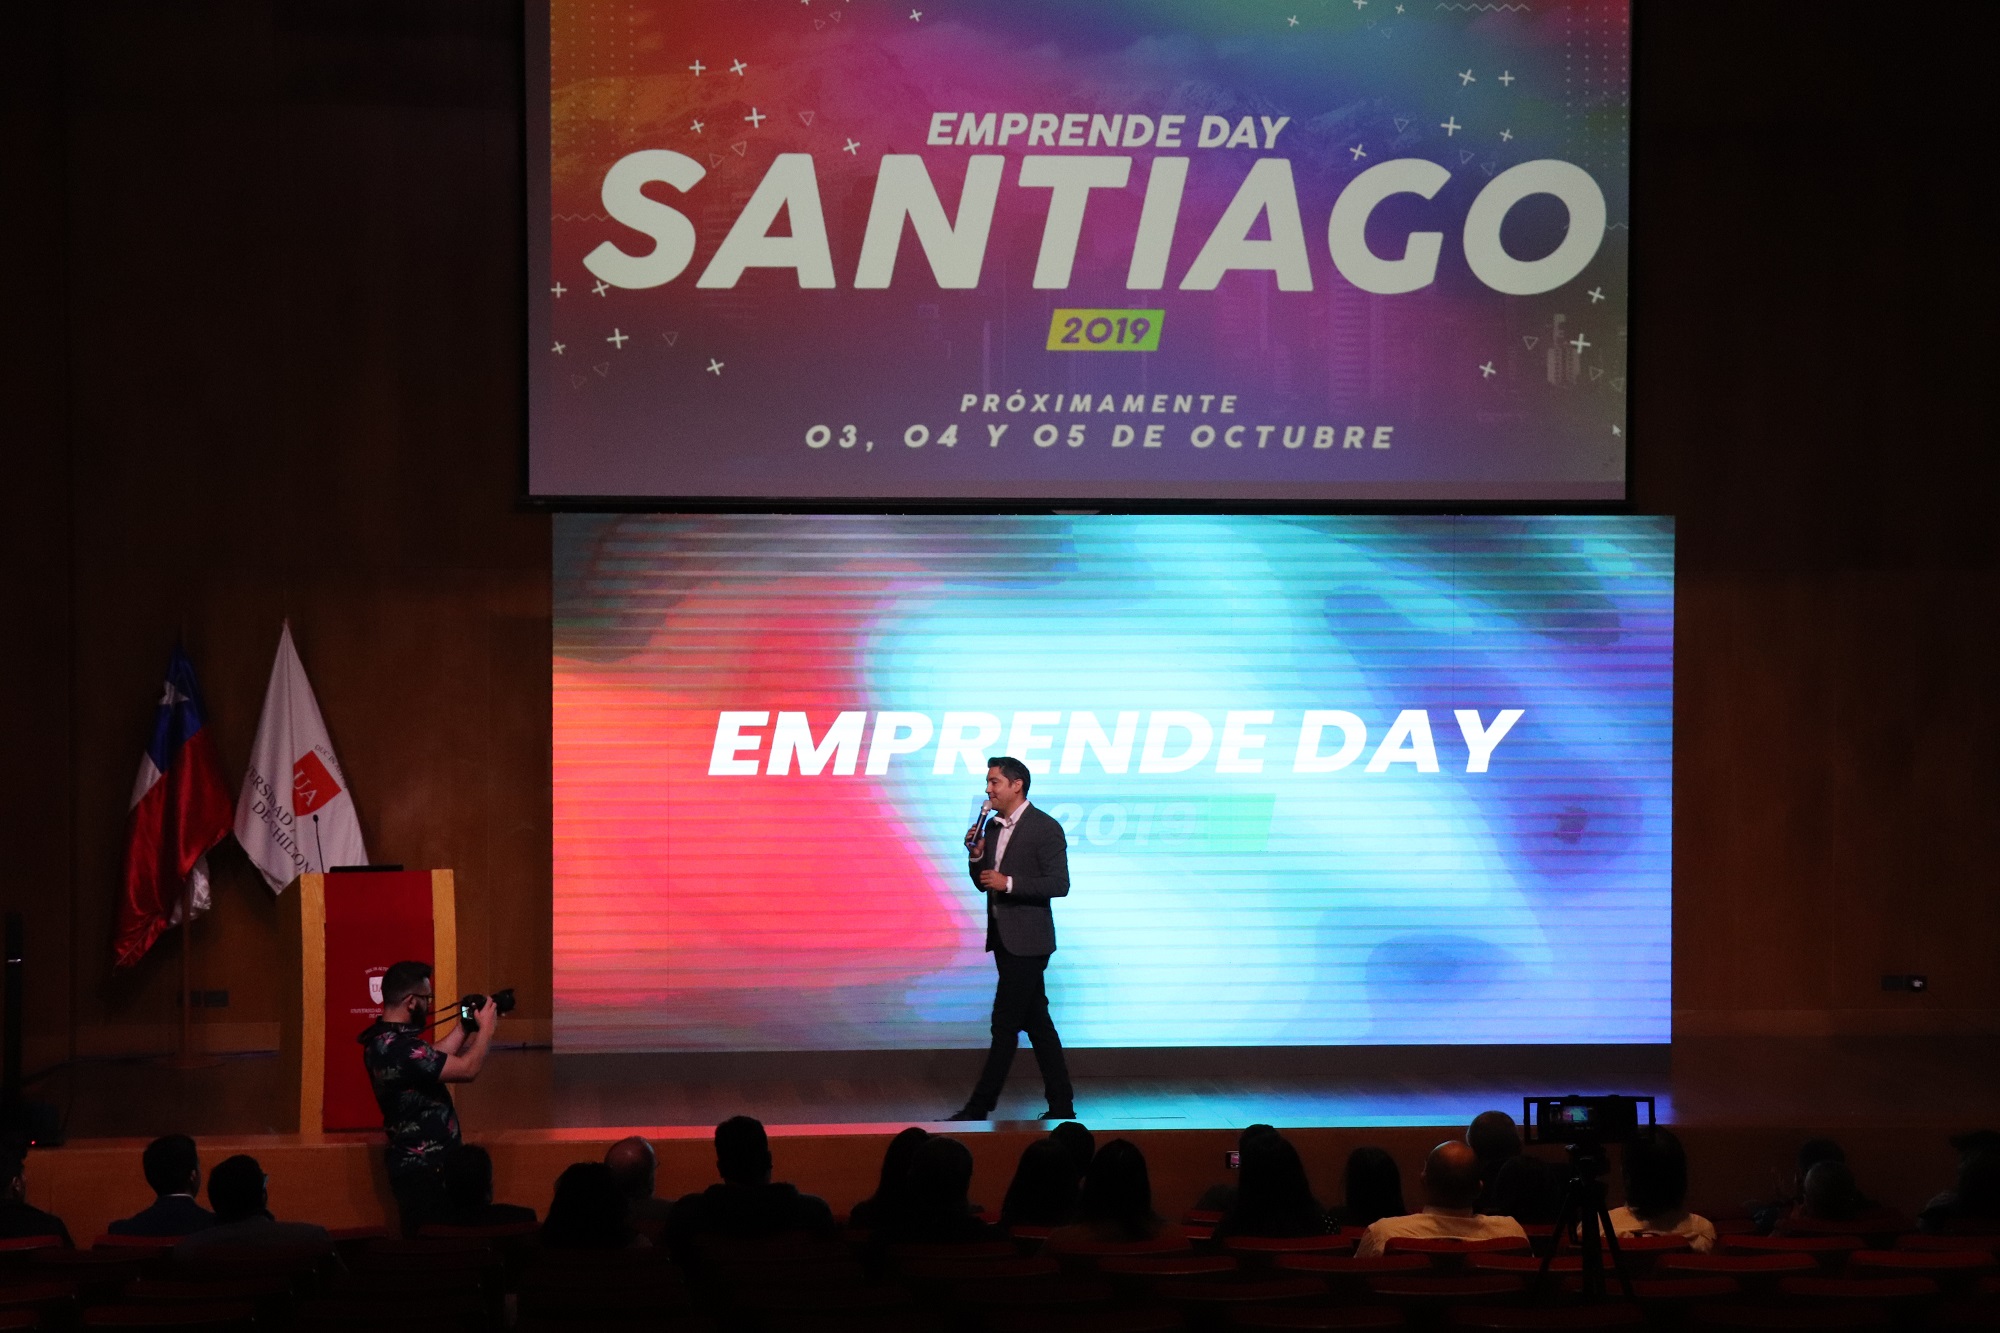 Emprende Day Santiago 2019